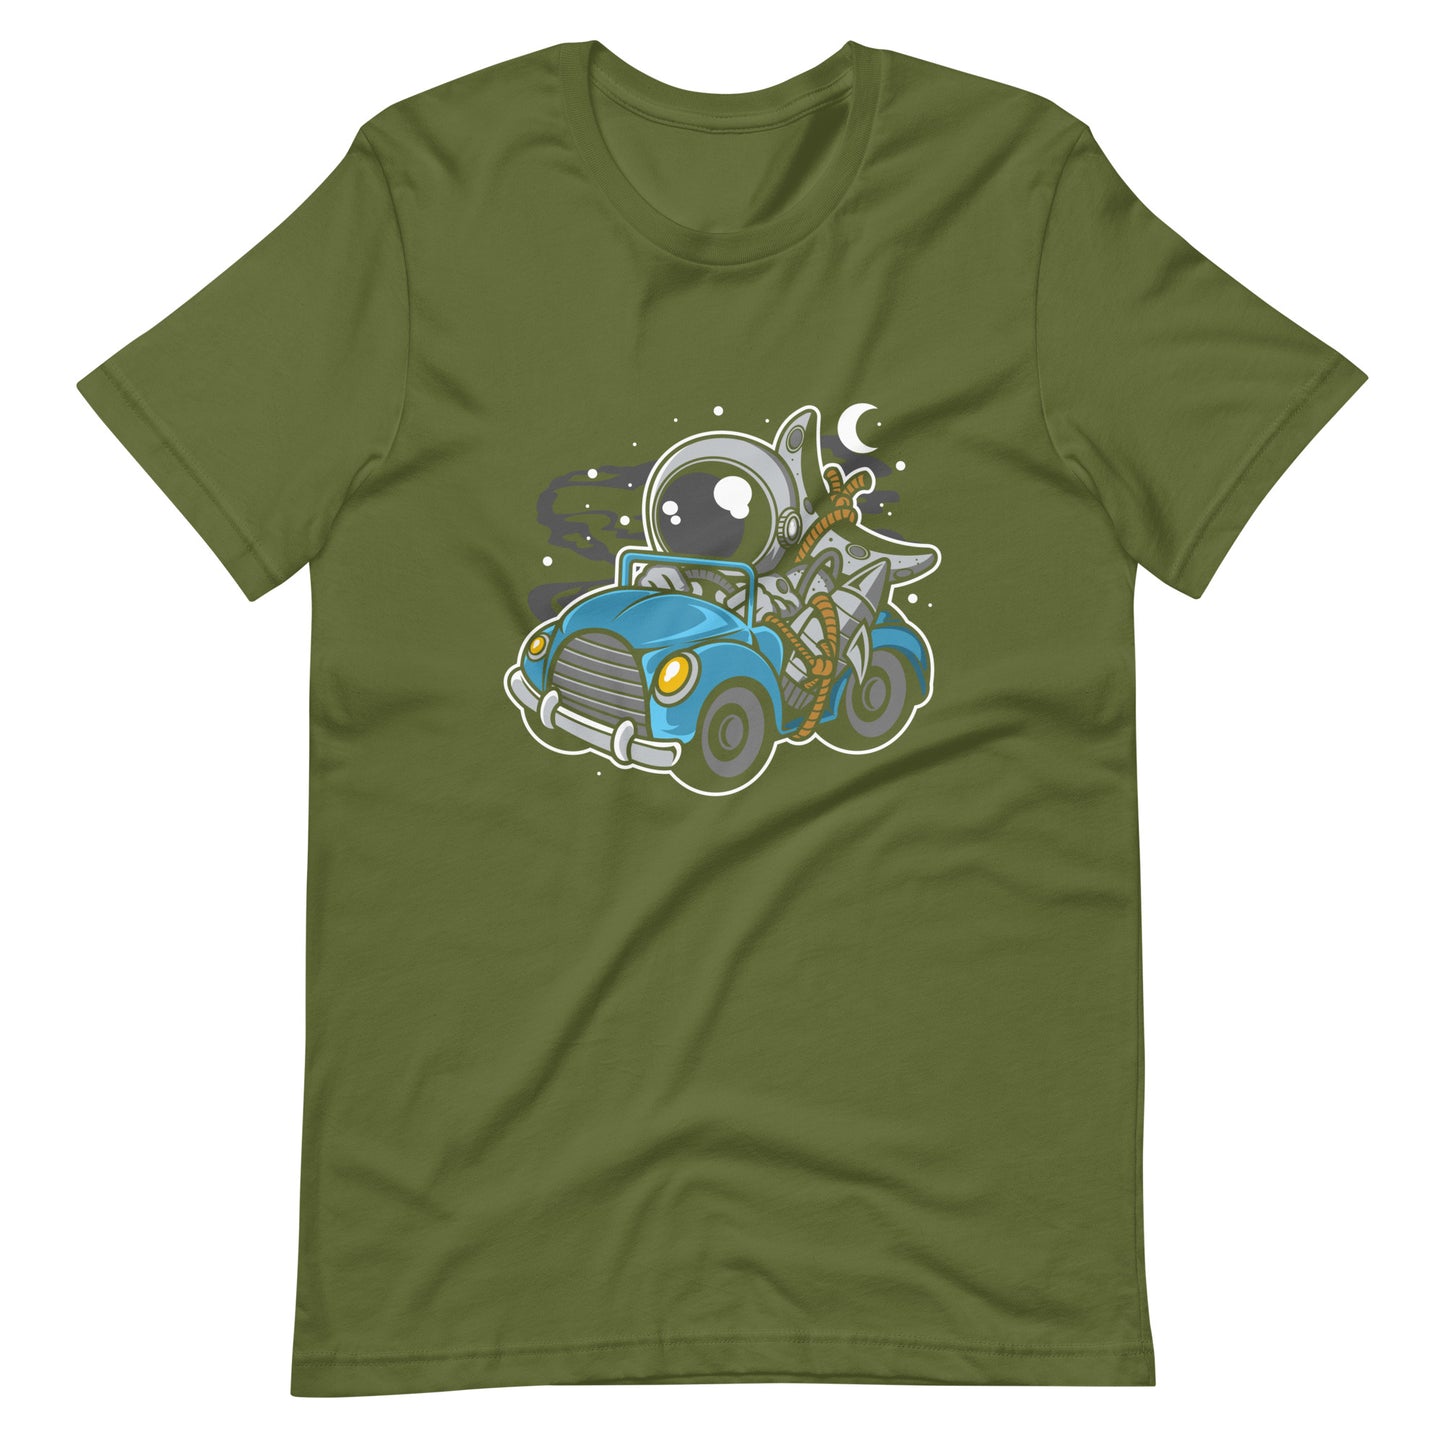 Astronaut Journey - Men's t-shirt - Olive Front